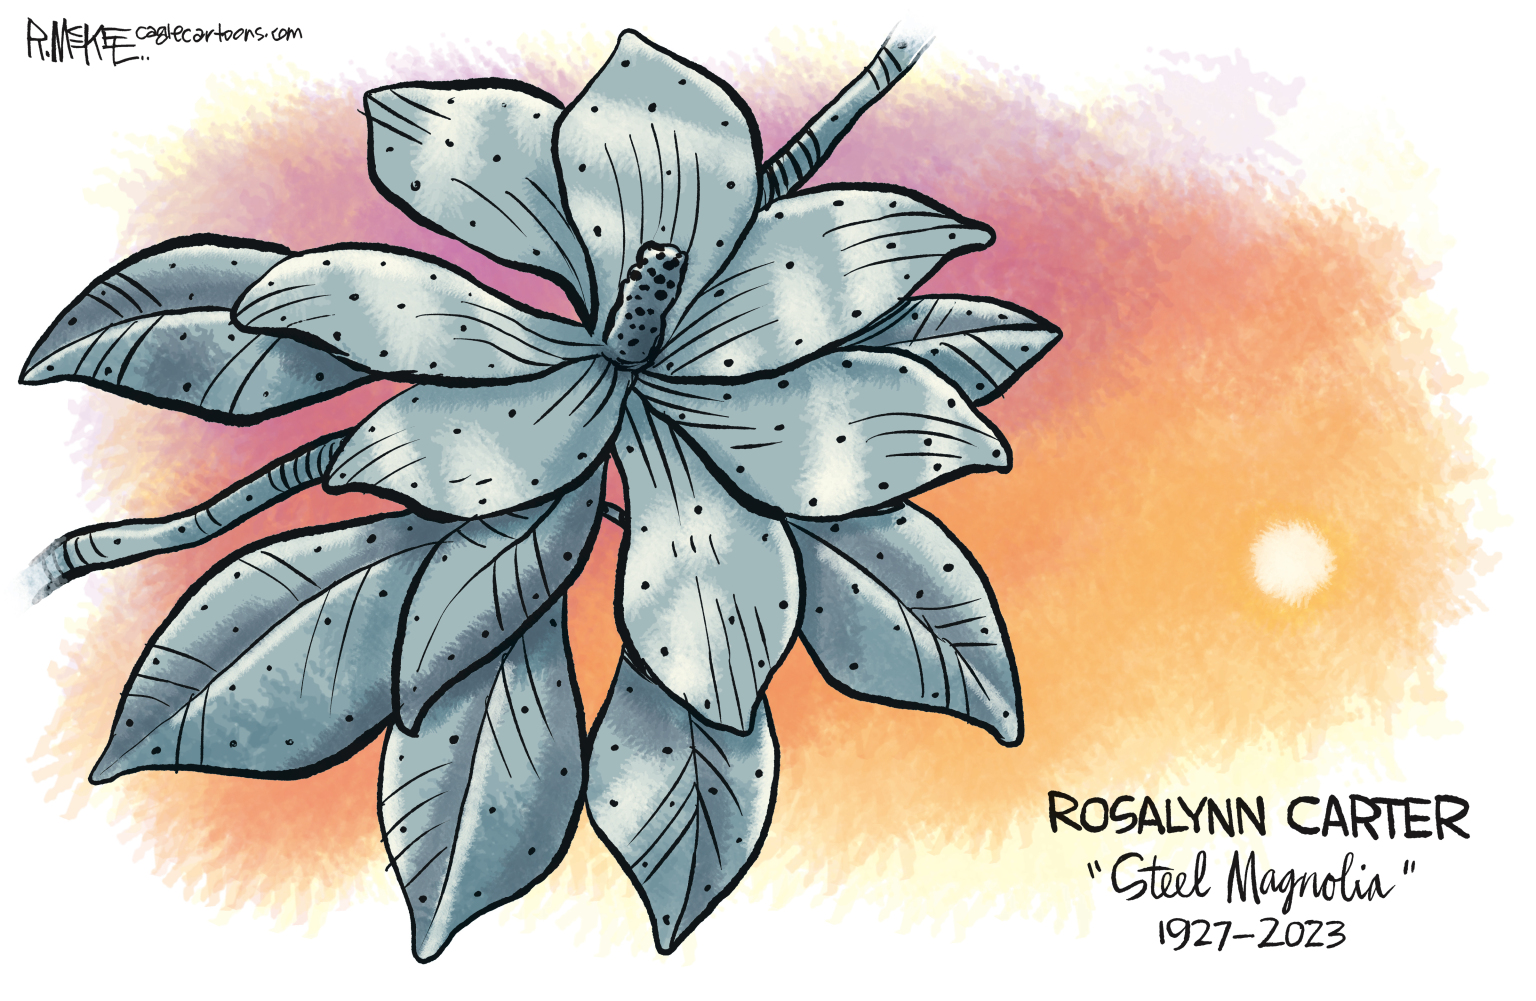 Rosalynn Carter Steel Magnolia - By Rick McKee